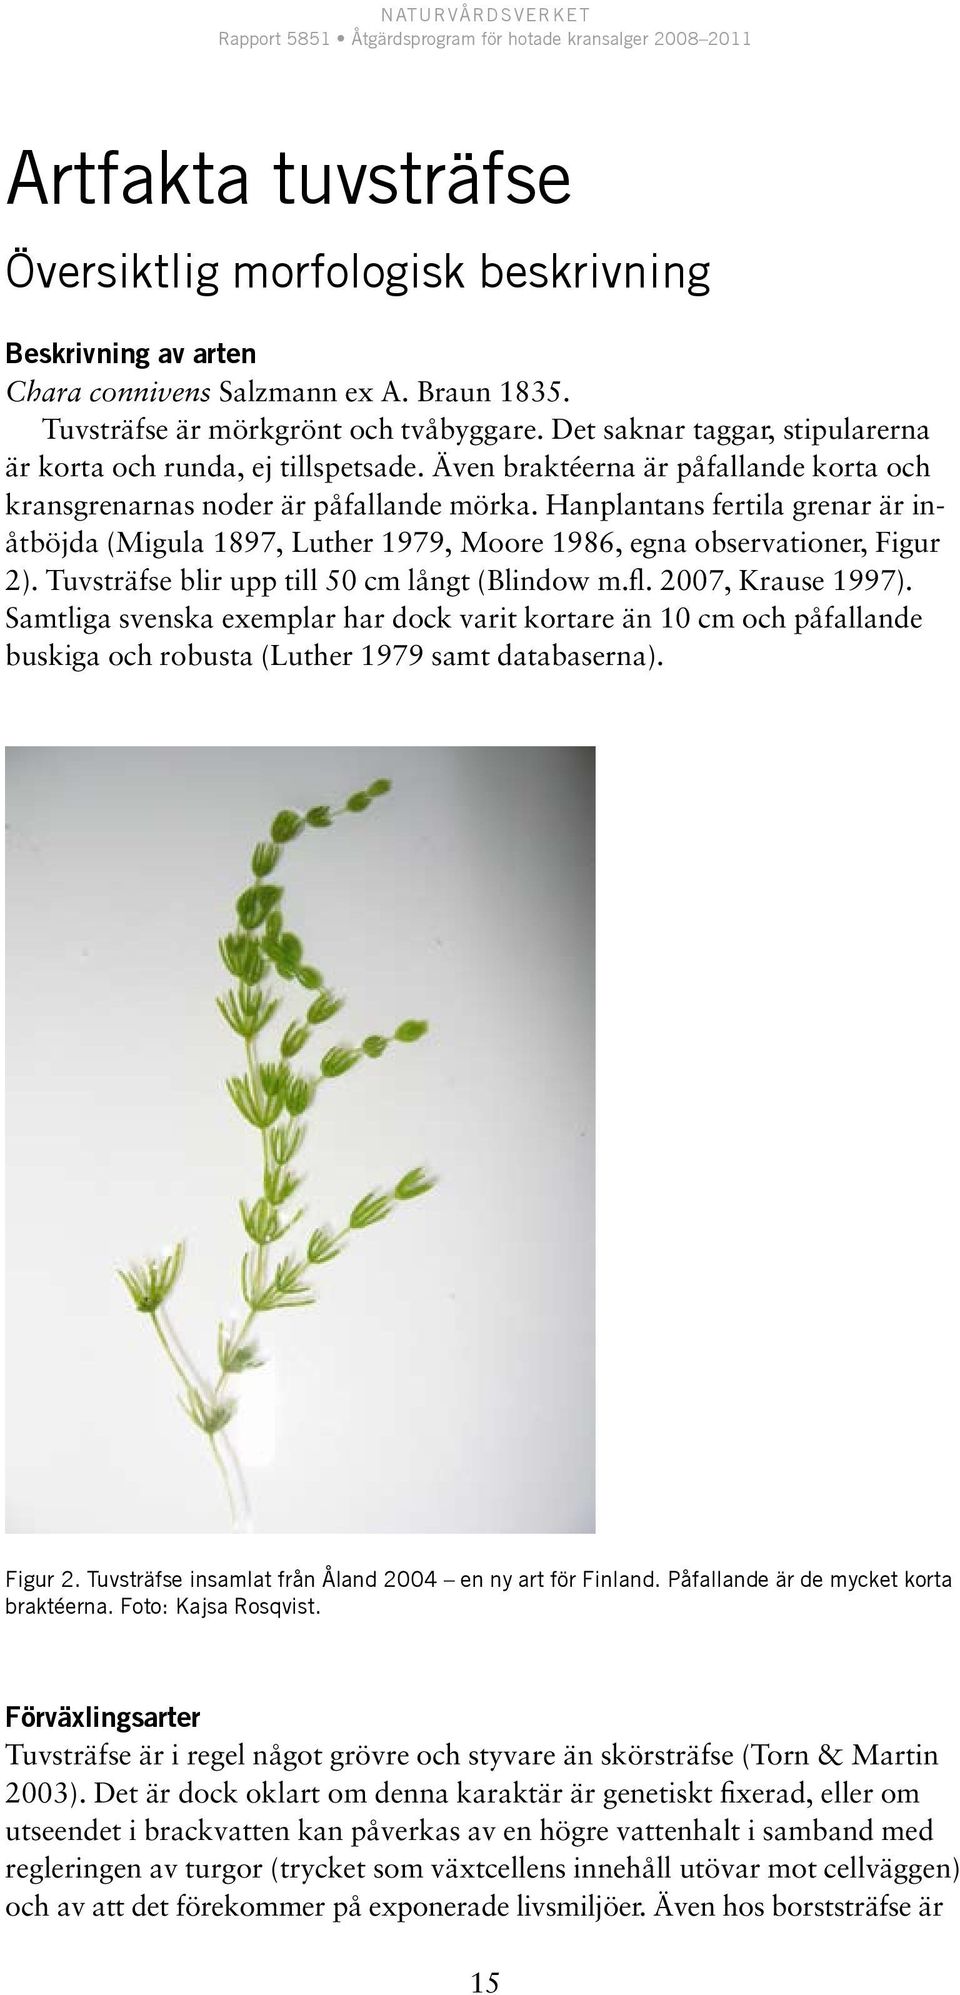 Hanplantans fertila grenar är inåtböjda (Migula 1897, Luther 1979, Moore 1986, egna observationer, Figur 2). Tuvsträfse blir upp till 50 cm långt (Blindow m.fl. 2007, Krause 1997).